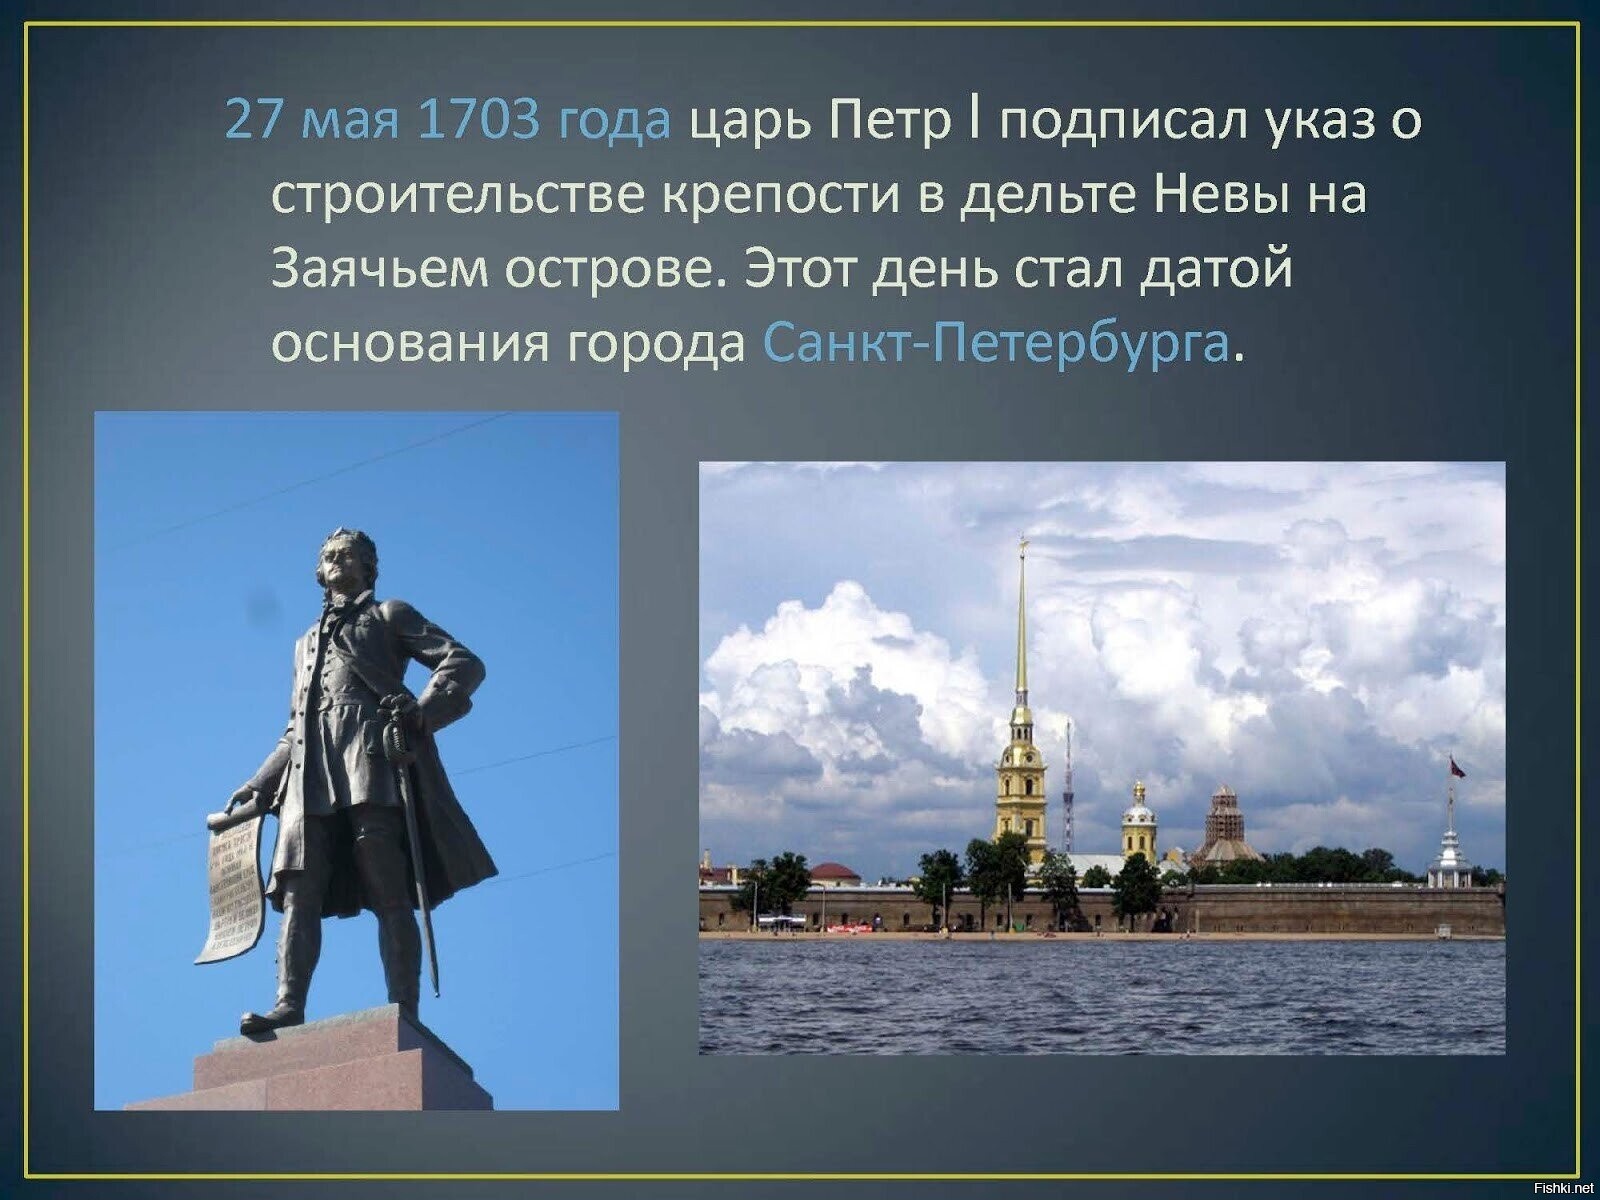 Путешествие по городам текст. 27 Мая 1703 года день основания Петром 1 города Санкт-Петербург.